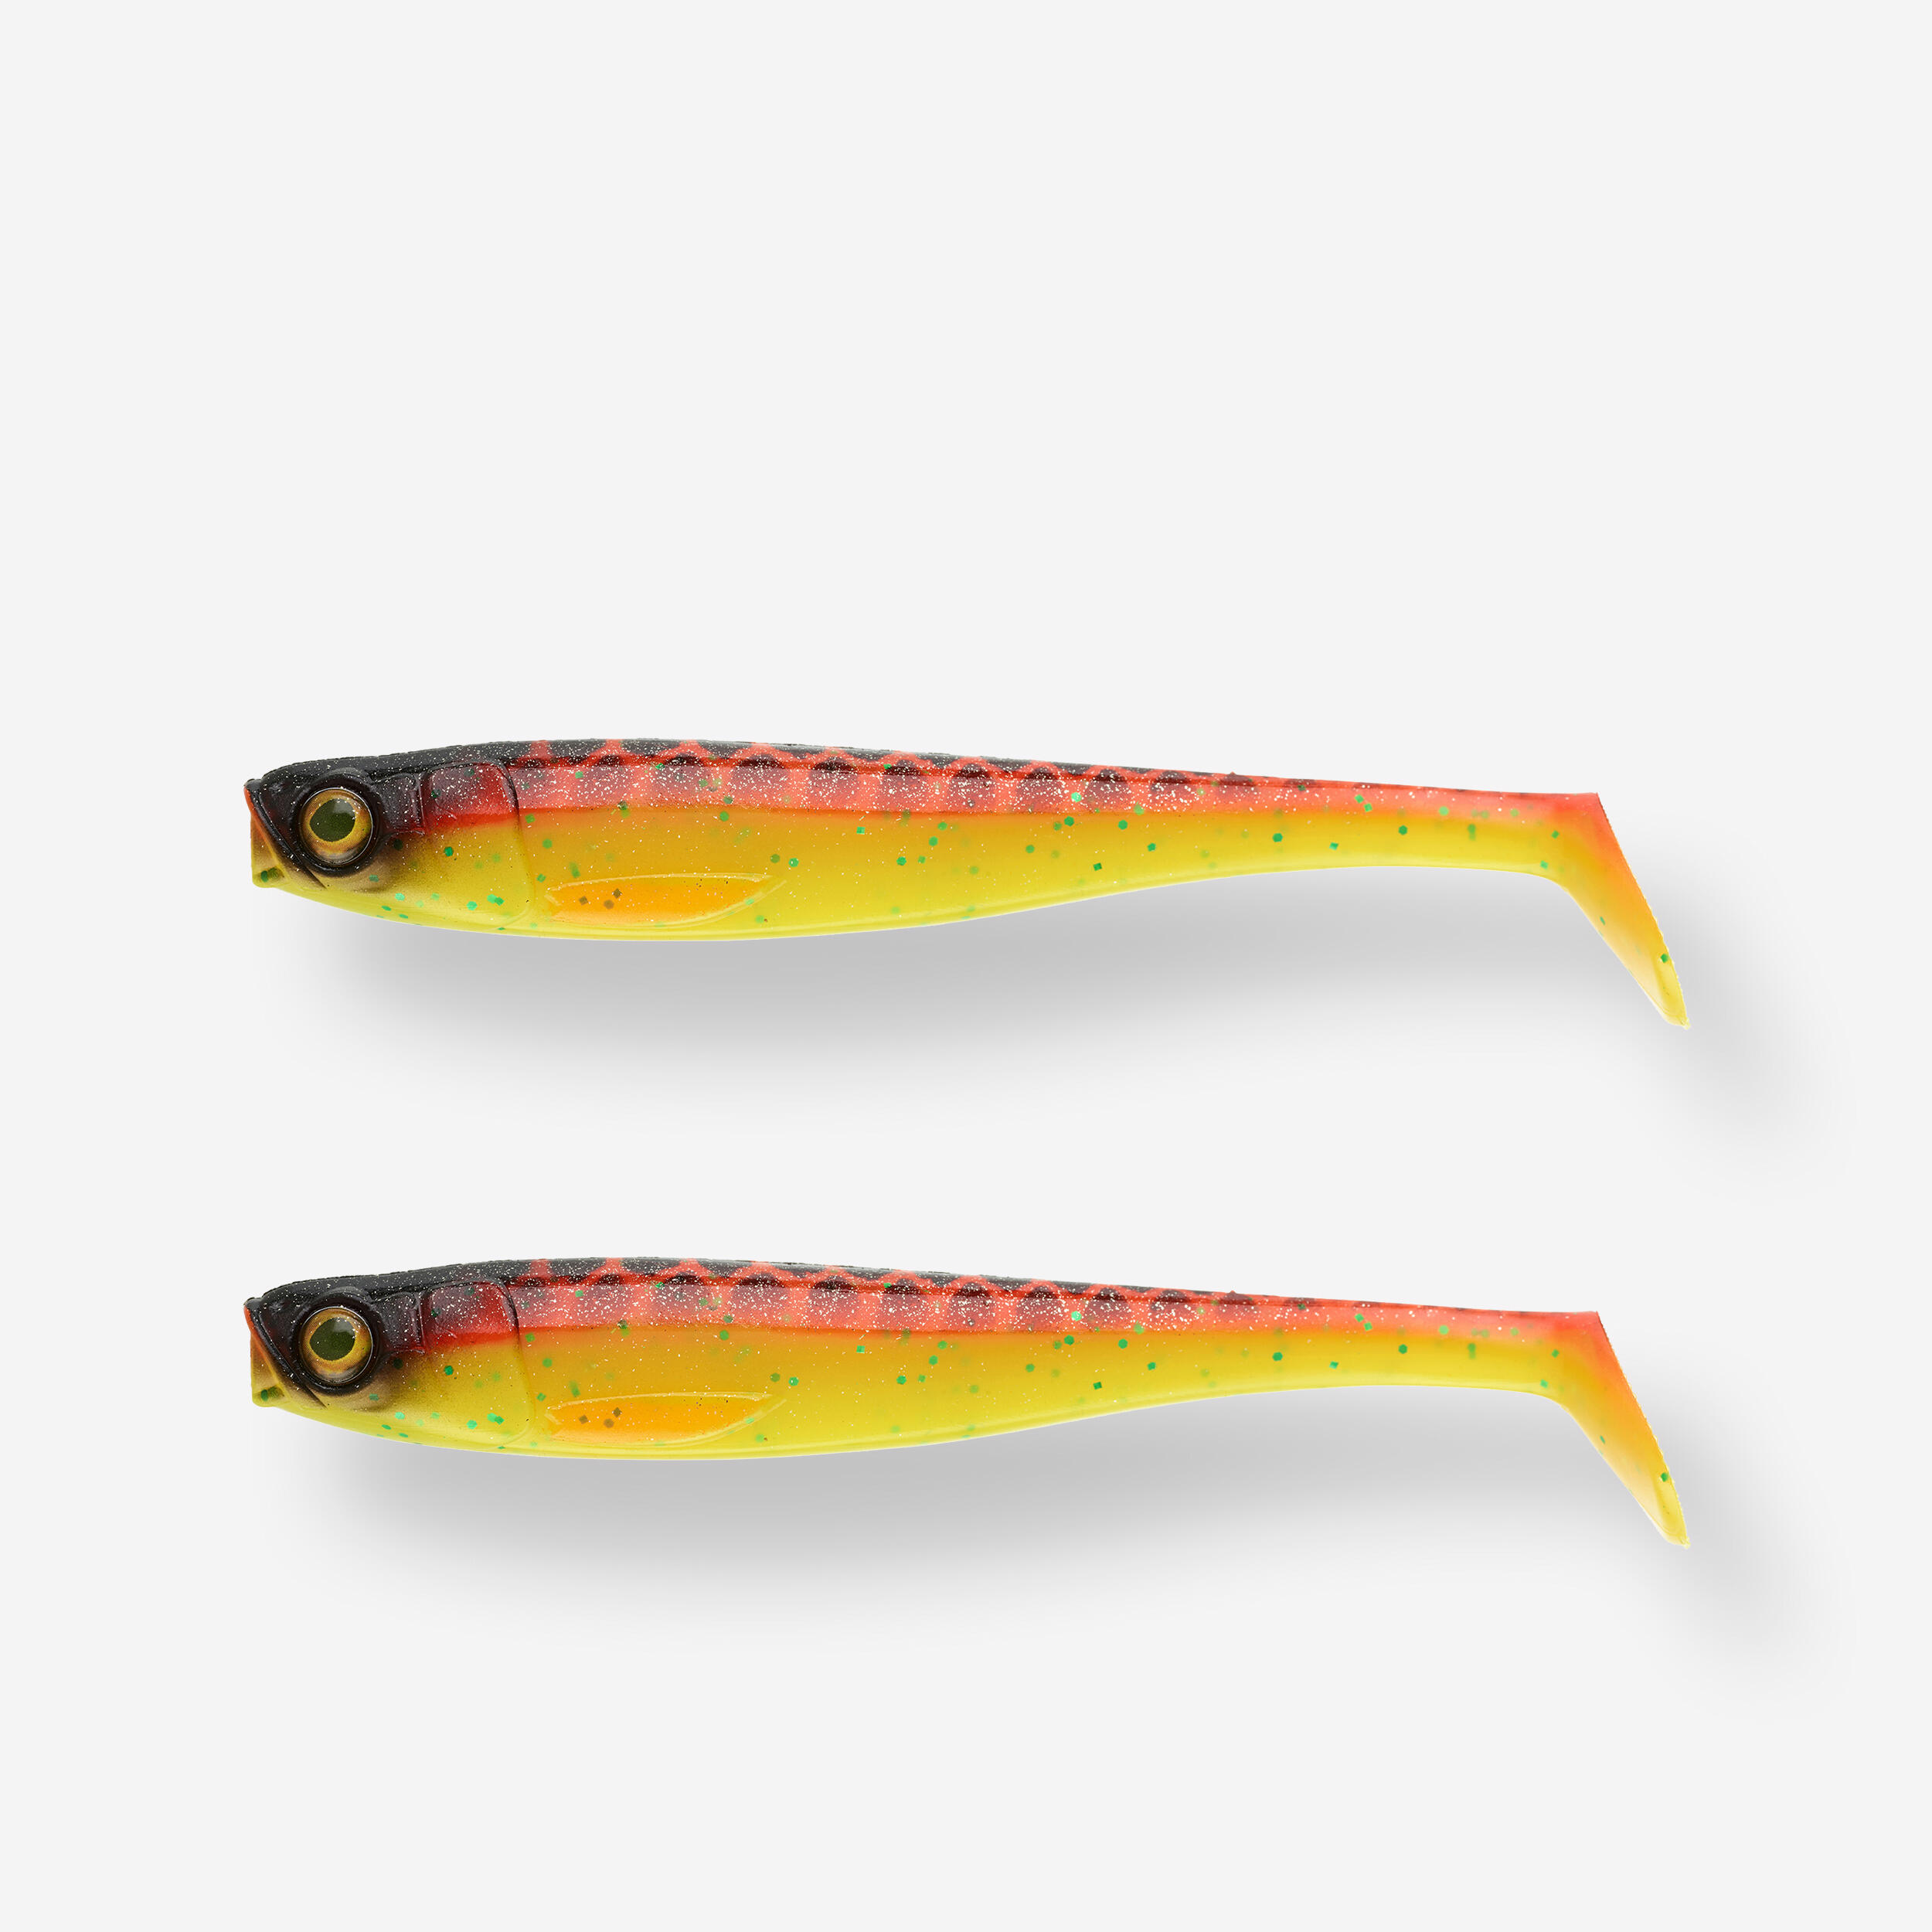 NÄƒlucÄƒ flexibilÄƒ ROGEN 120 pescuit cu nÄƒluci portocaliu X2